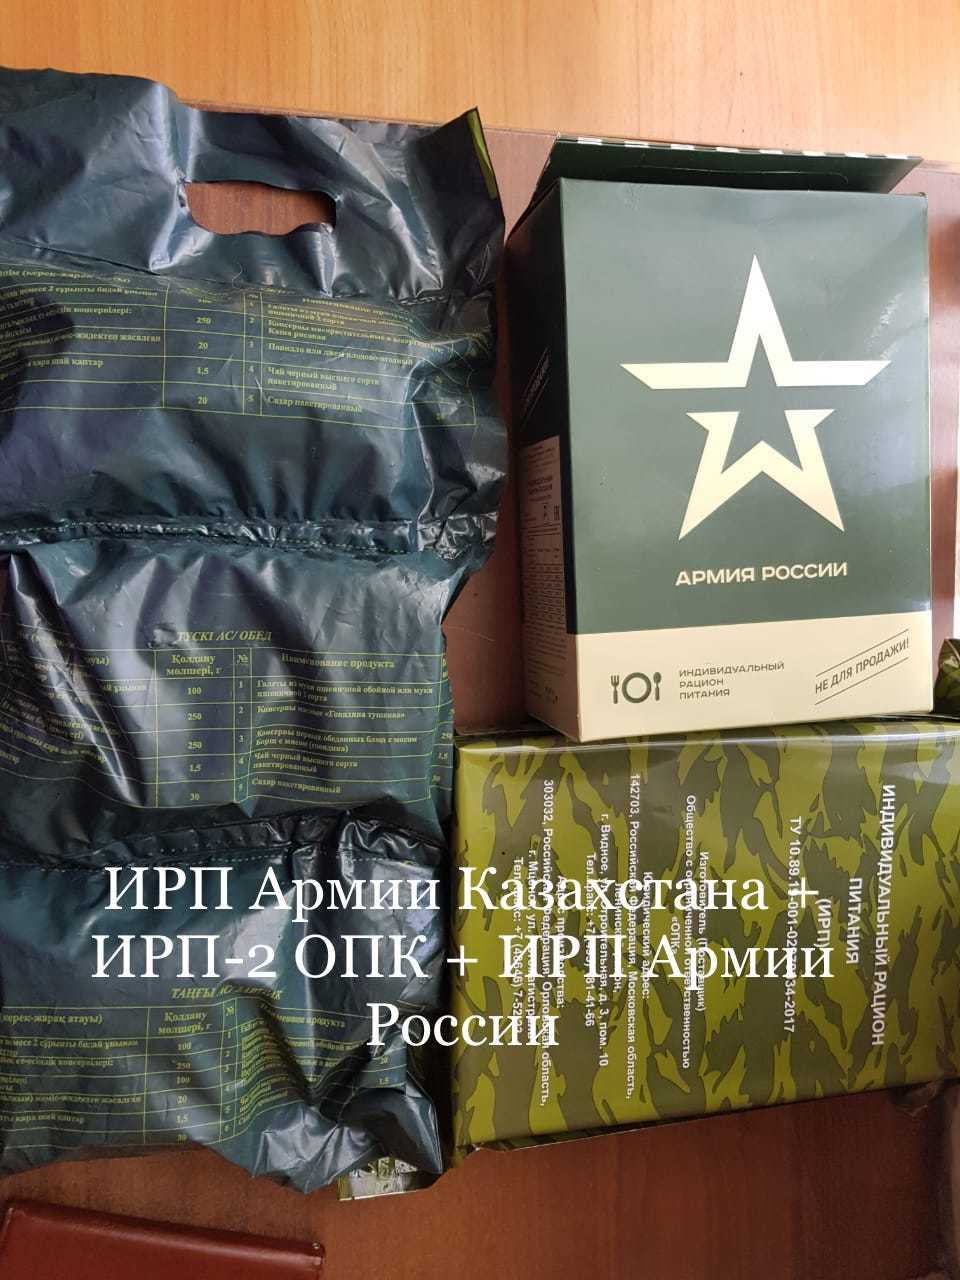 Комбо набор ИРП Армии Казахстана + ИРП-2 ОПК + ИРП Армии России&nbsp;